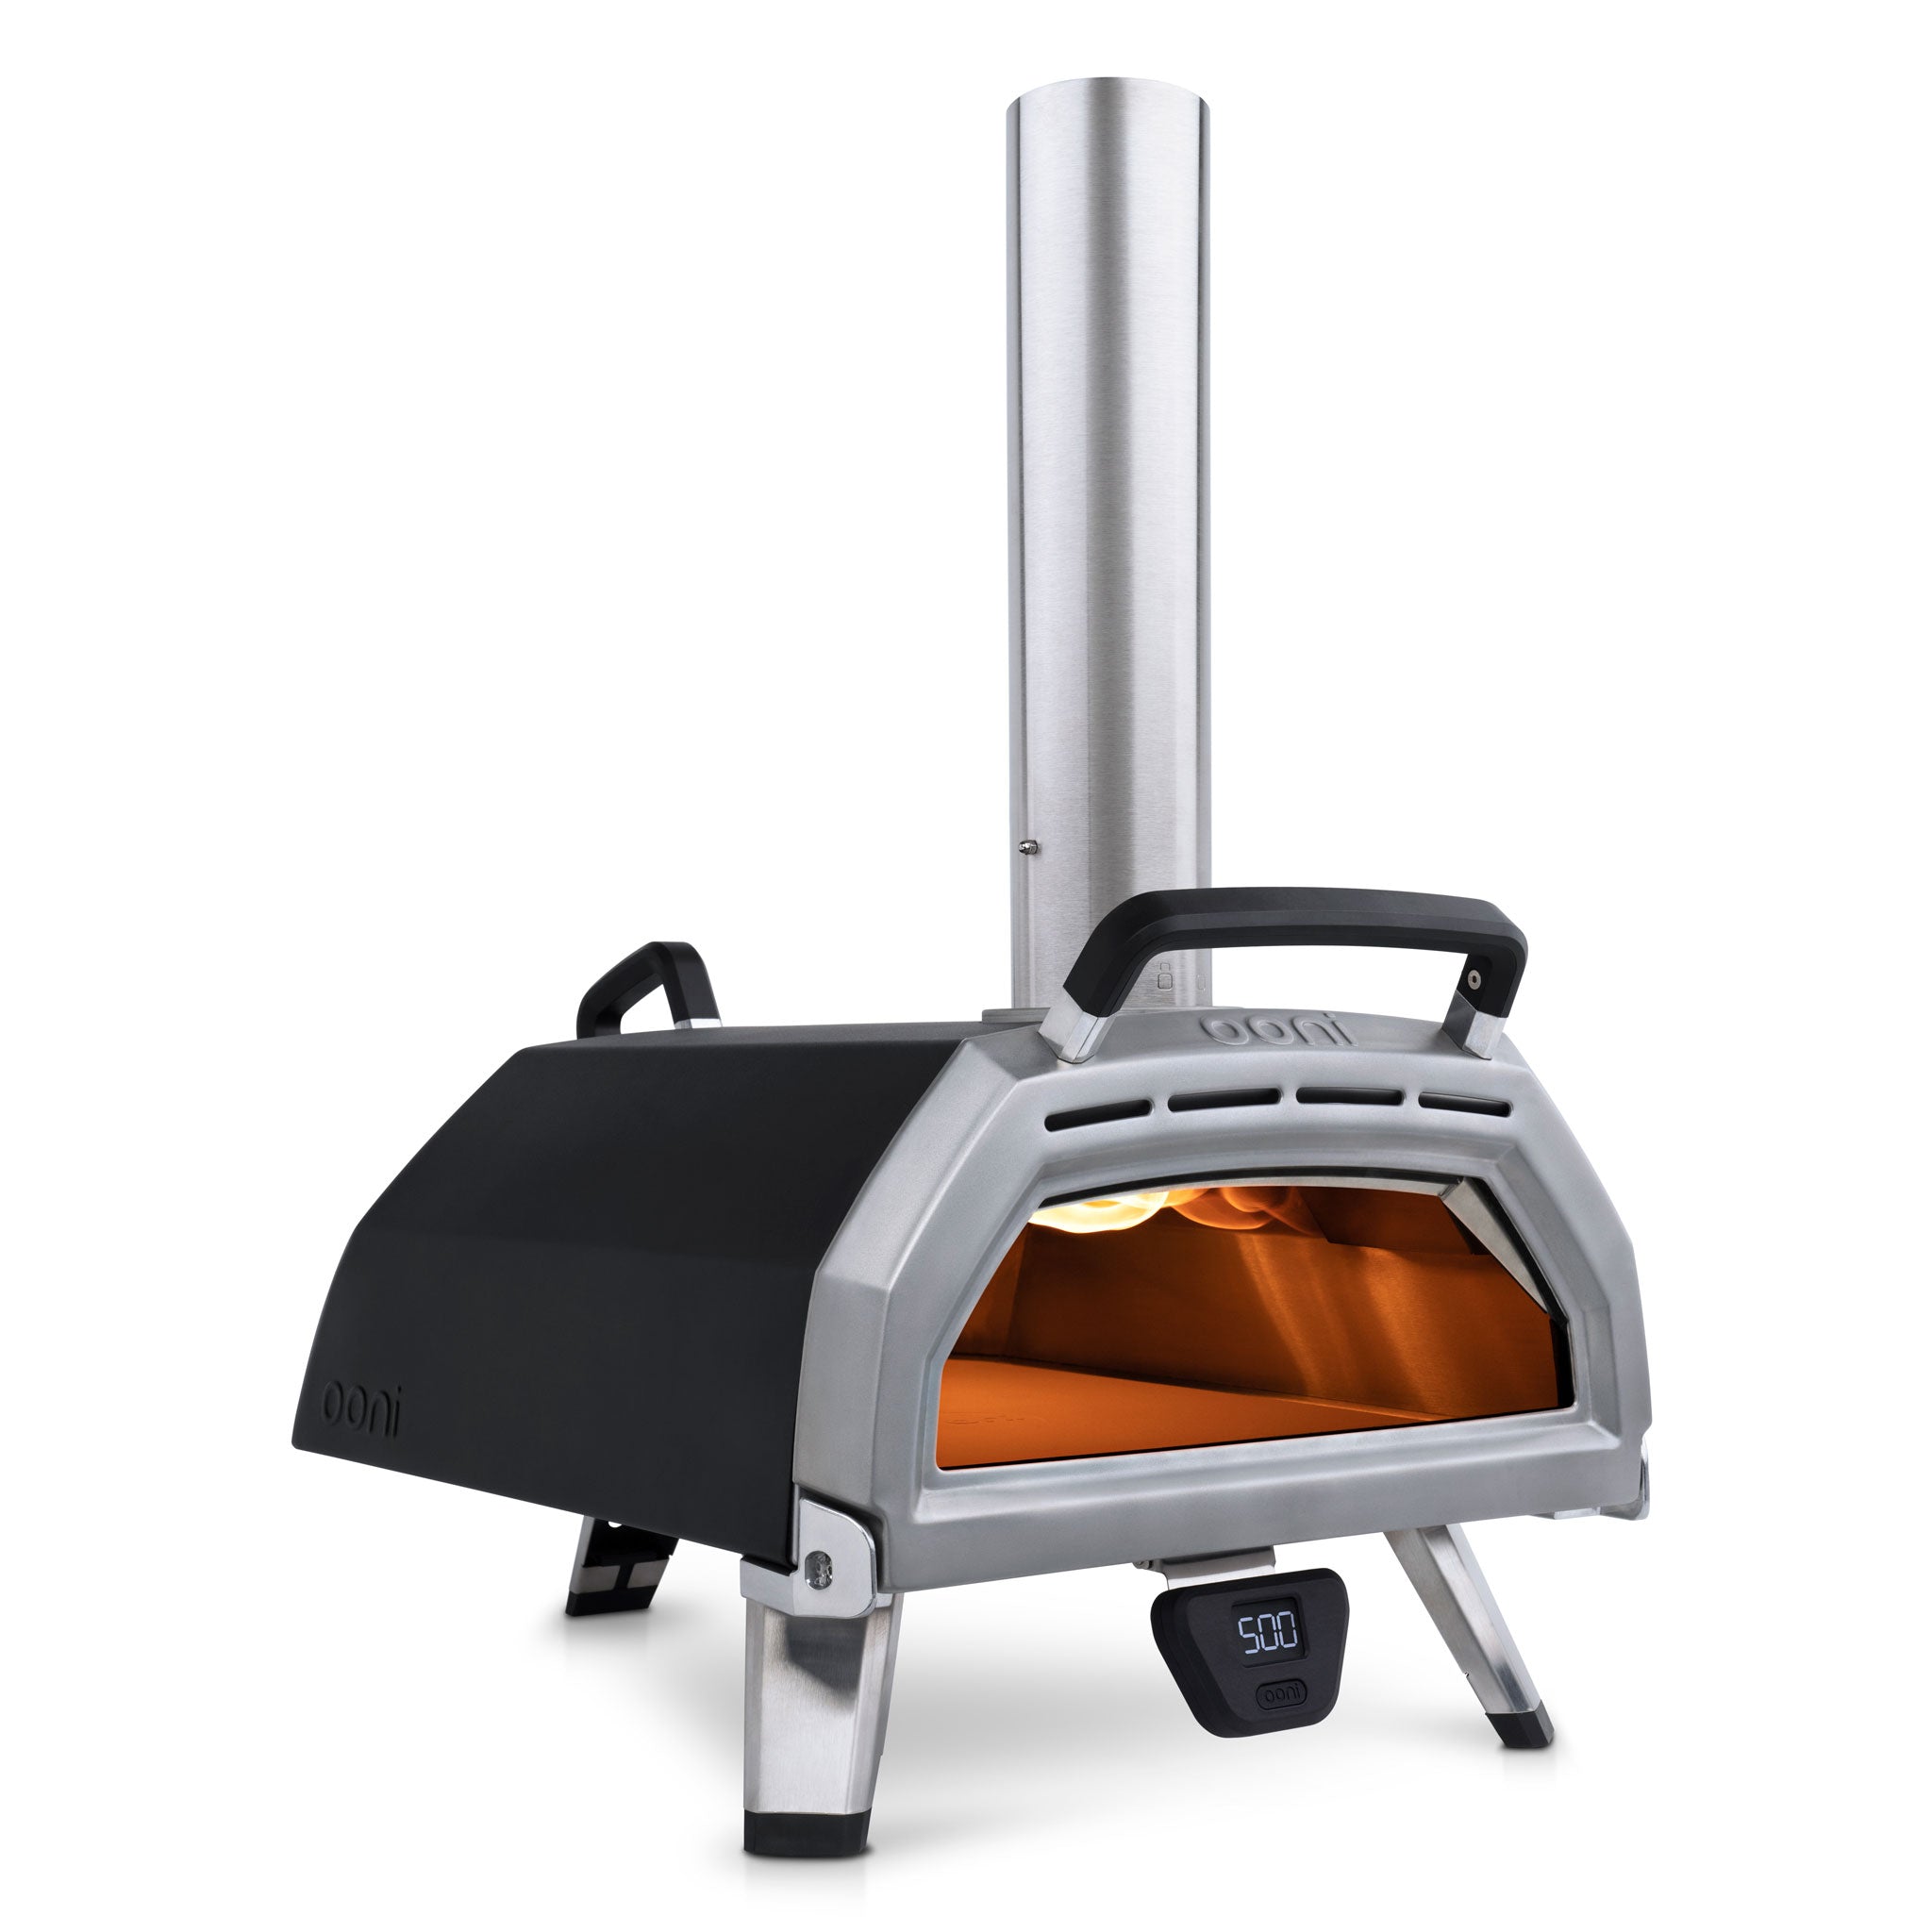 Save 20%: Ooni Karu 16 Multi-Fuel Pizza Oven
